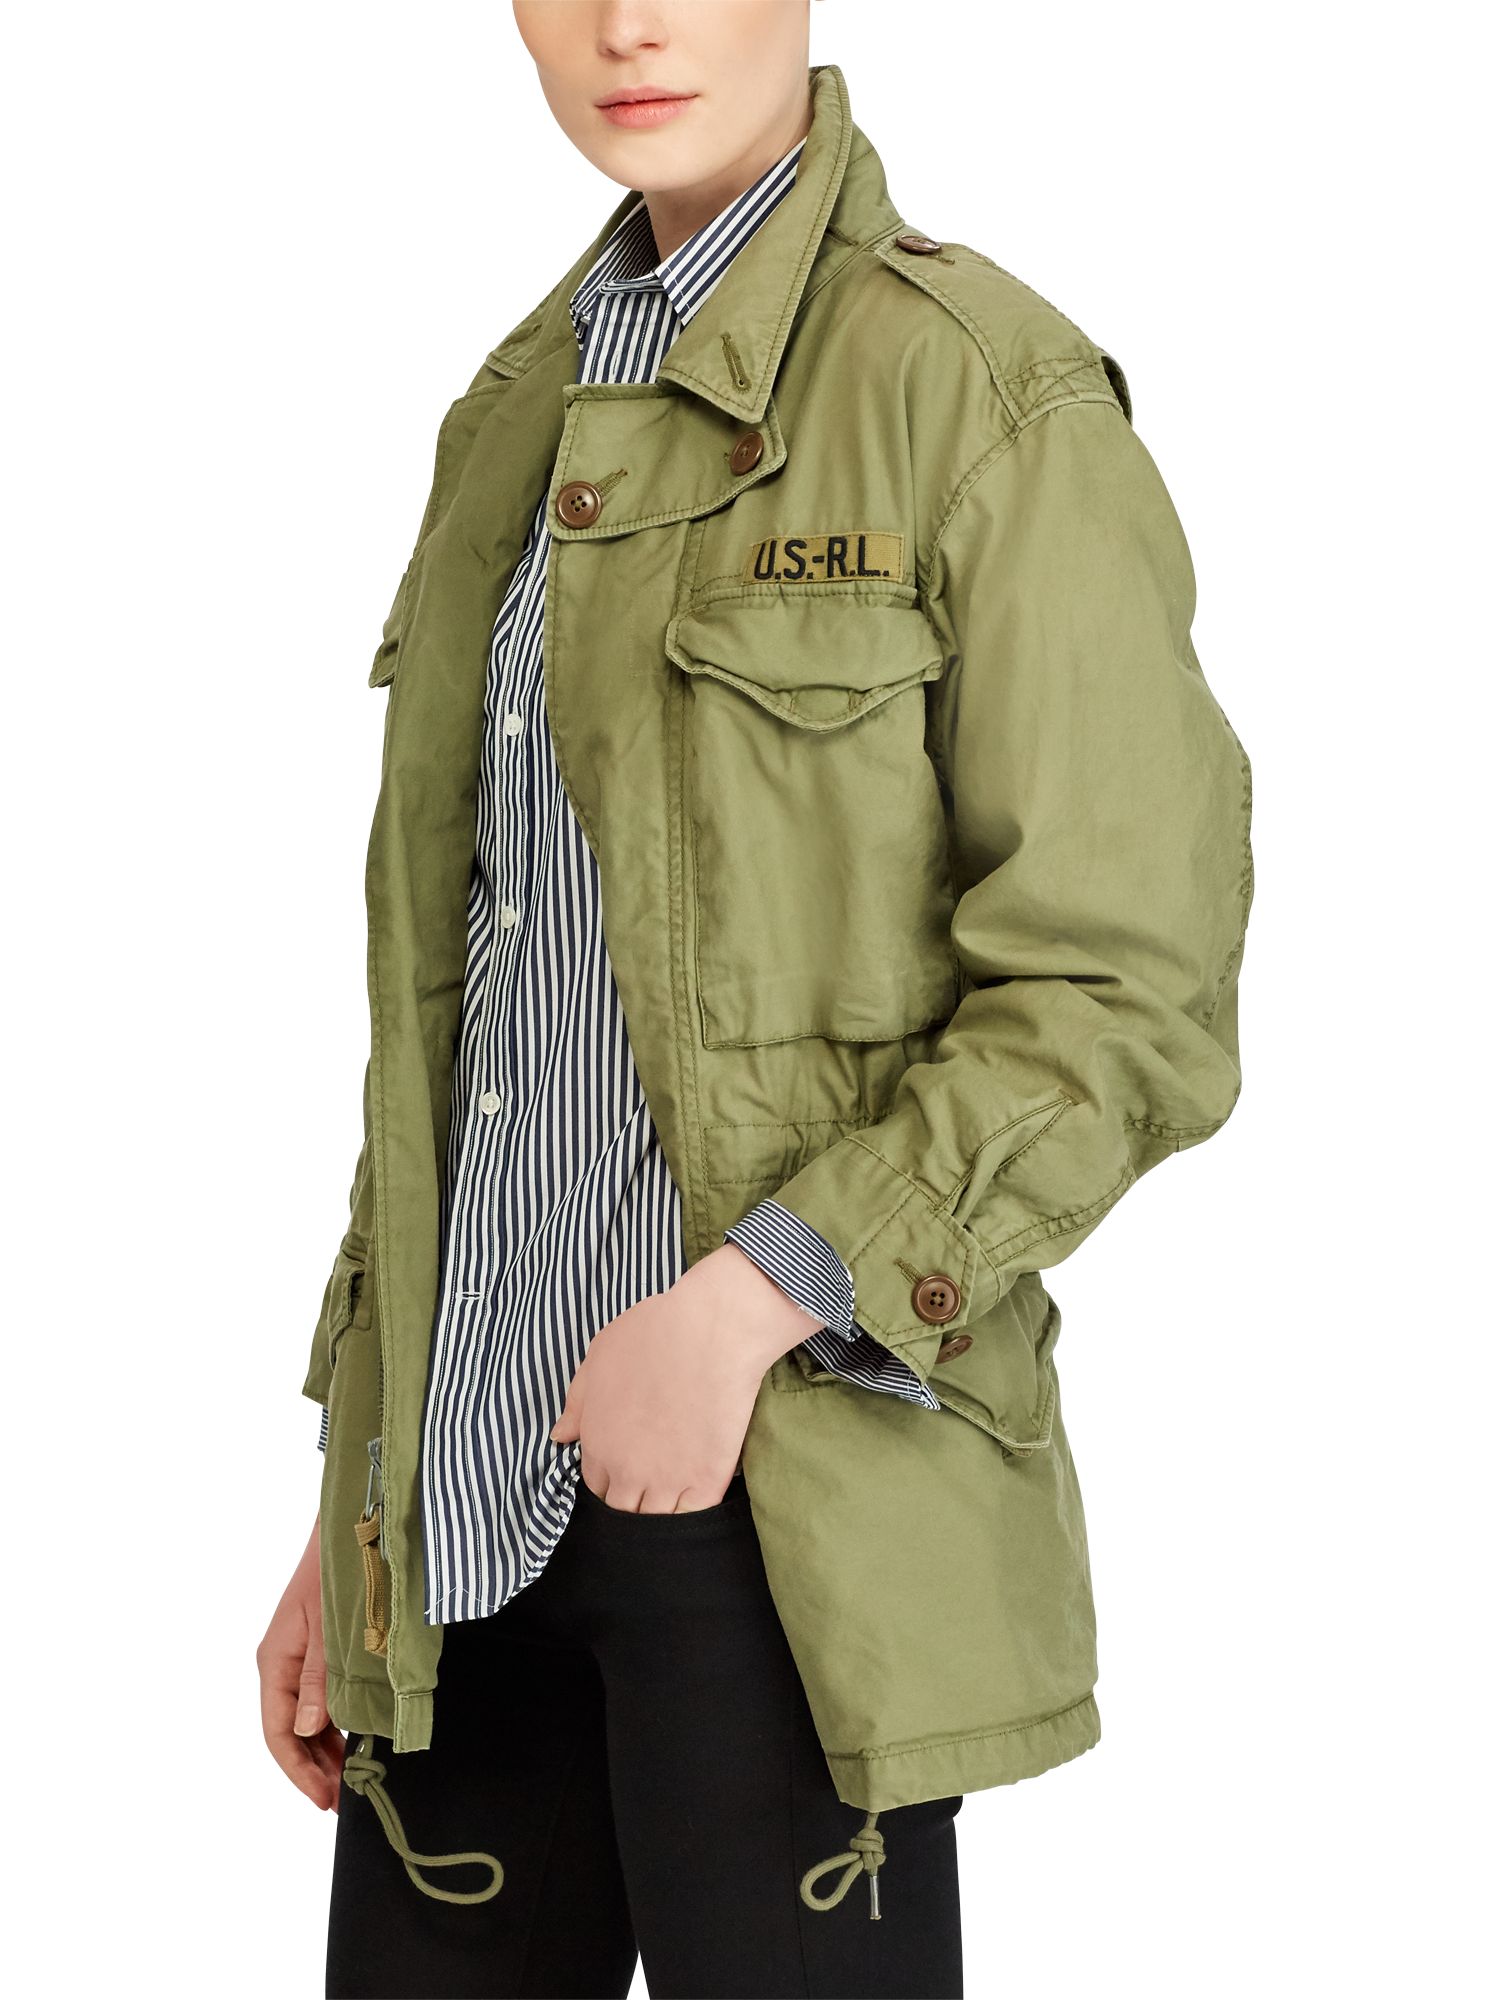 ralph lauren green military jacket